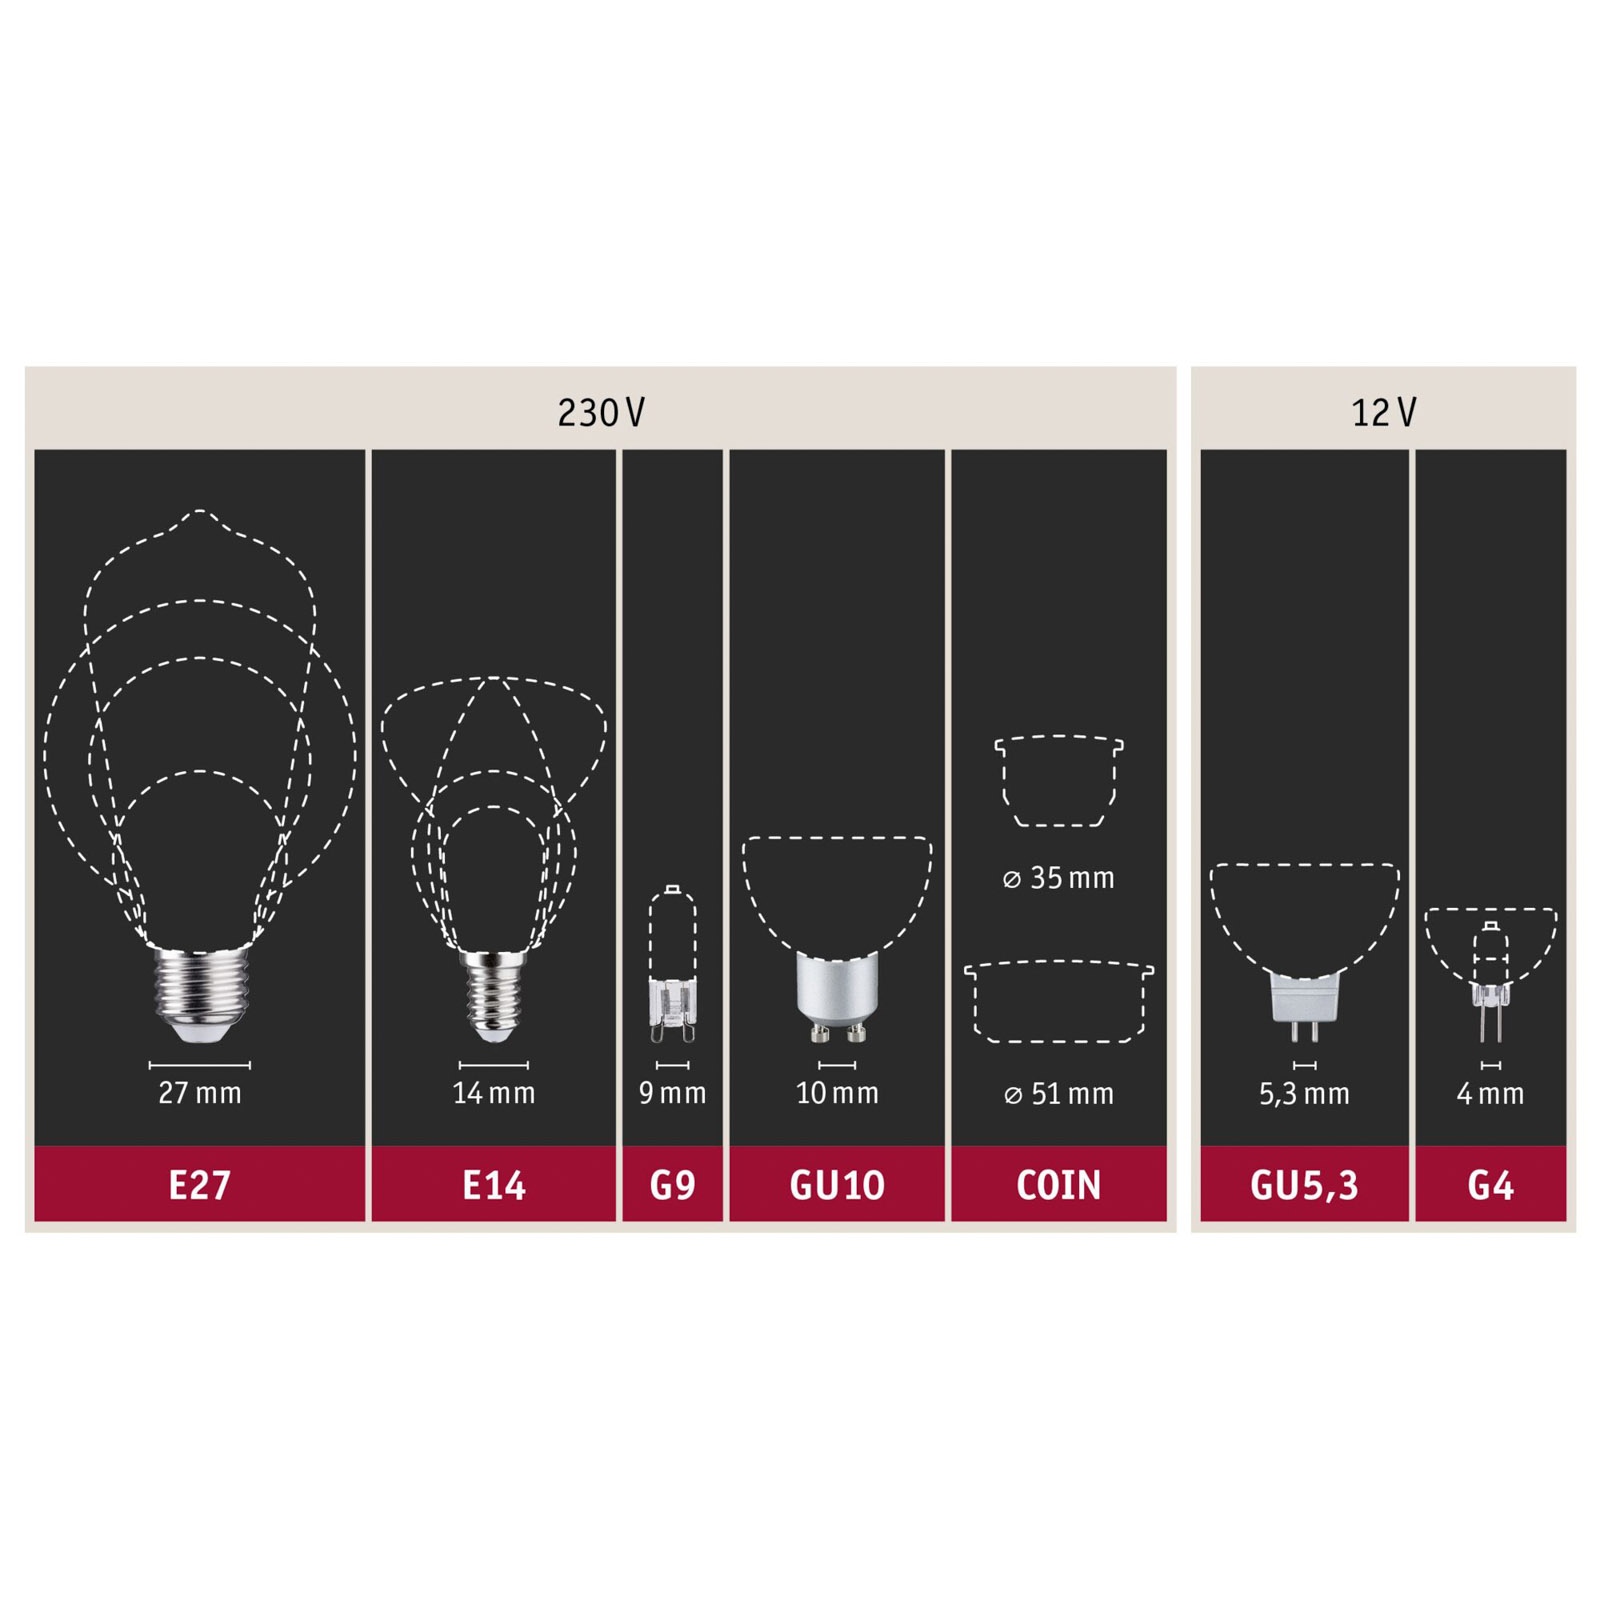 Paulmann LED-Tropfenlampe E14 4,5W 2.700K matt 2er